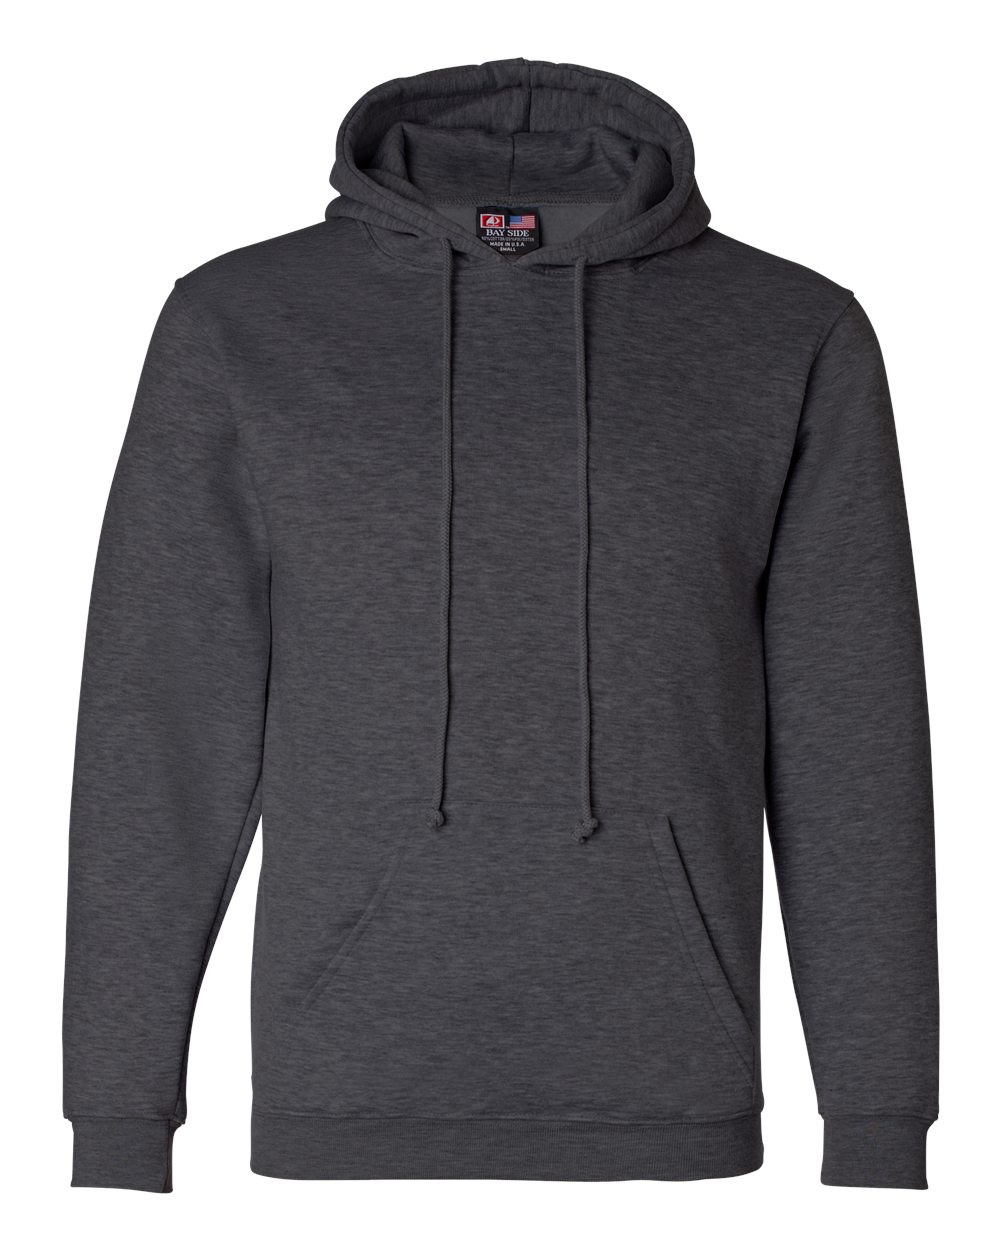 Download Download Full-Zip Hooded Sweatshirt Front View Of Hoodie ...